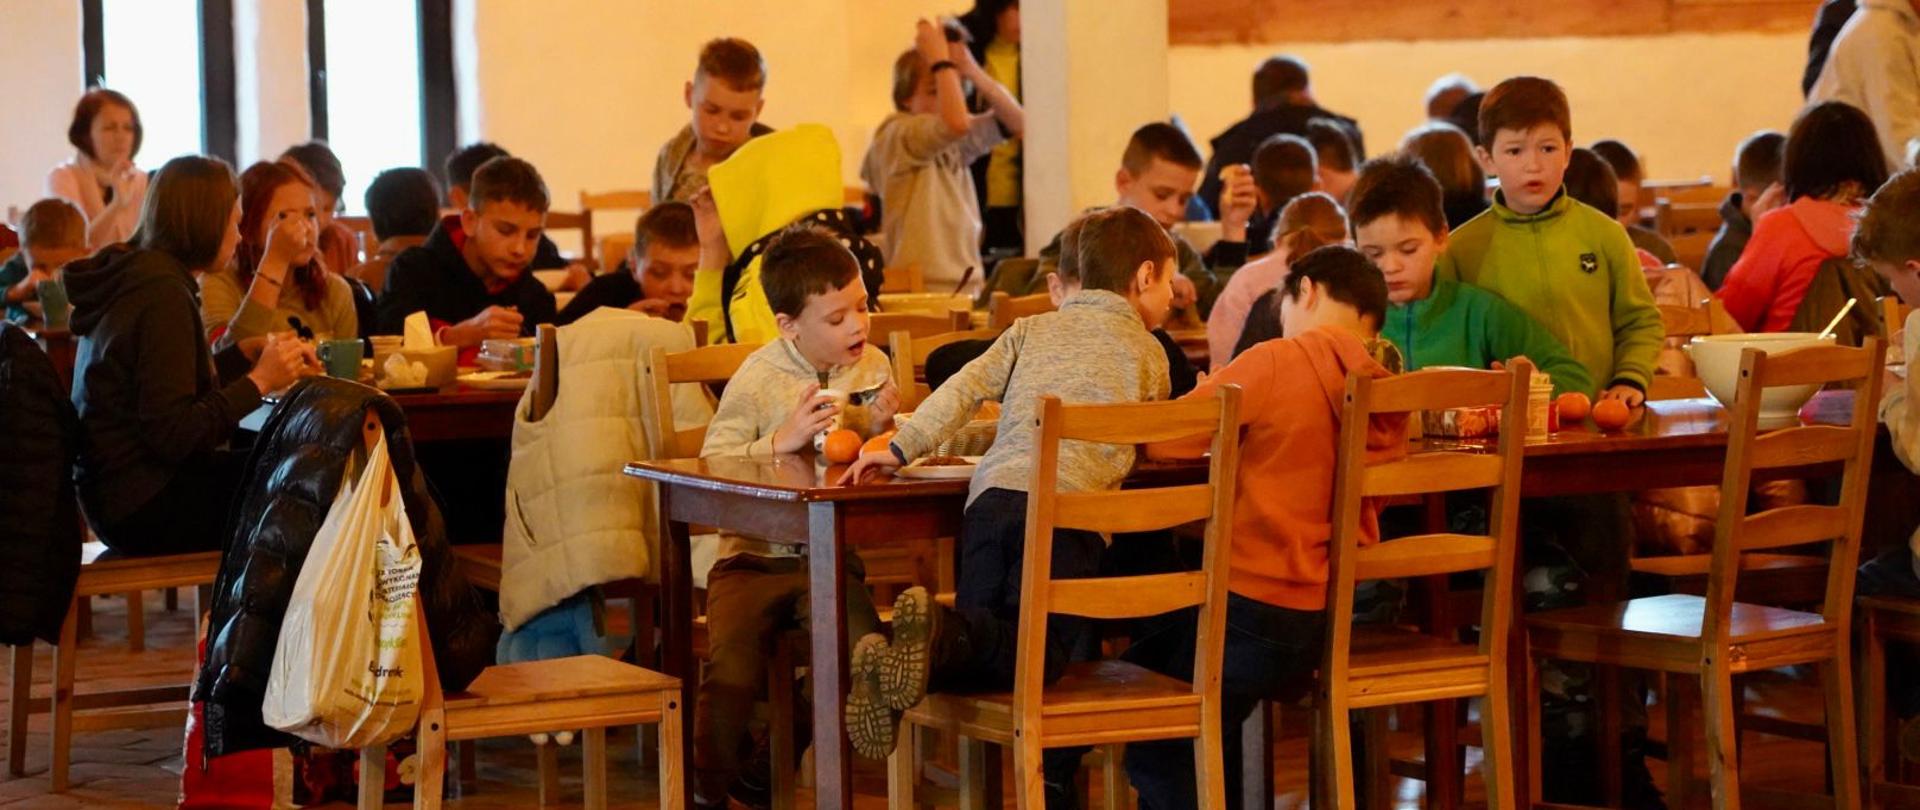 dzieci siedzą przy stołach i jedzą 